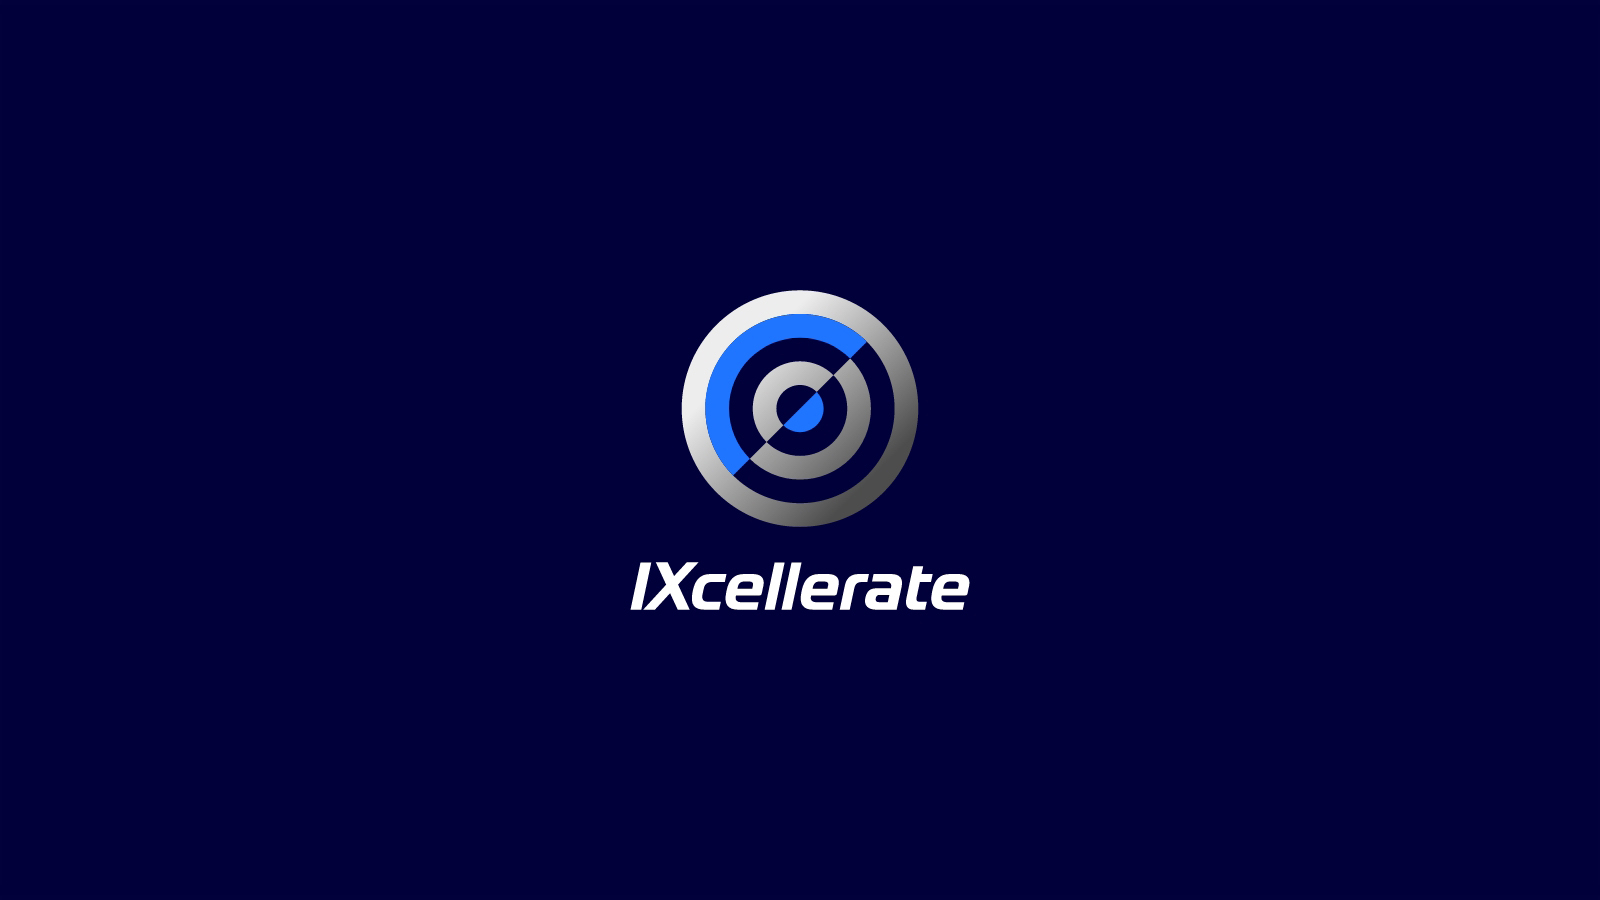 Комплексный рестайлинг бренда IXcellerate: разработка платформы позиционирования бренда, создание логотипа, фирменного стиля, брендбука, дизайна сайта, корпоративного каталога и рекламных материалов.   